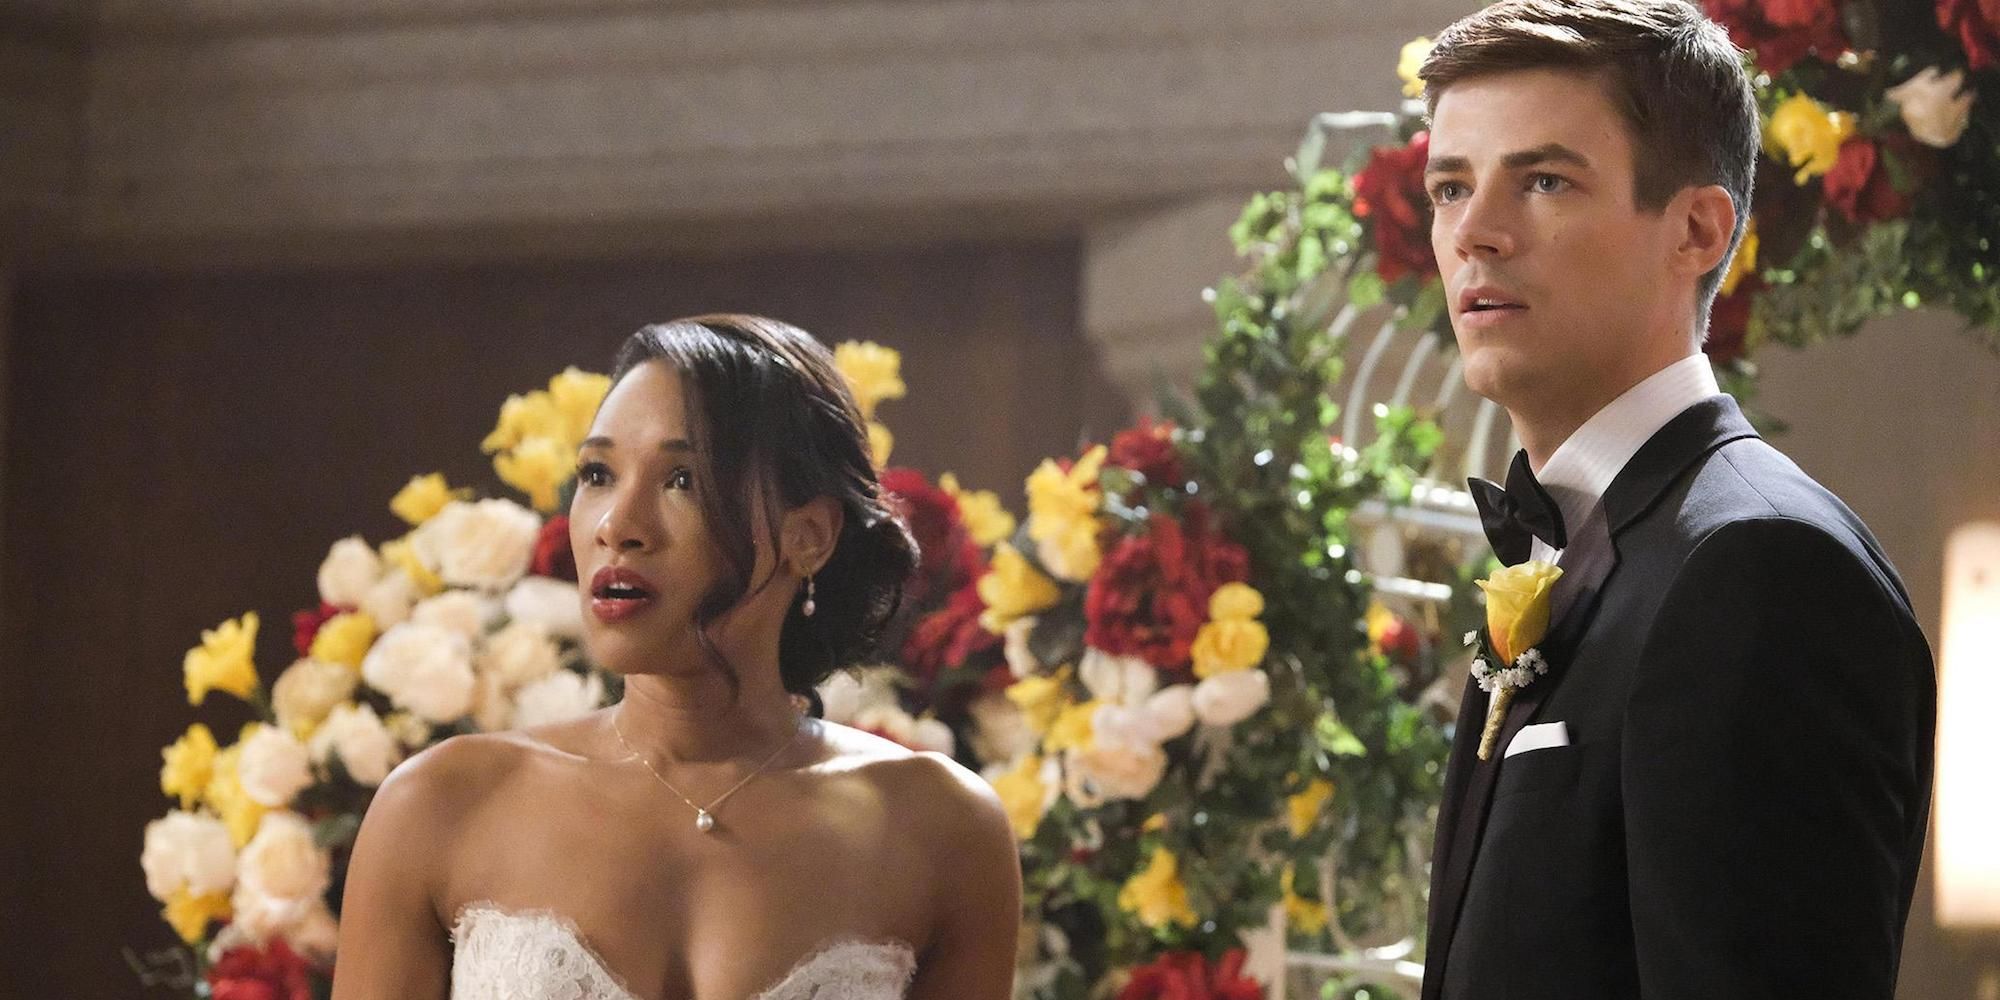 Barry Allen and Iris West stop their wedding in shock